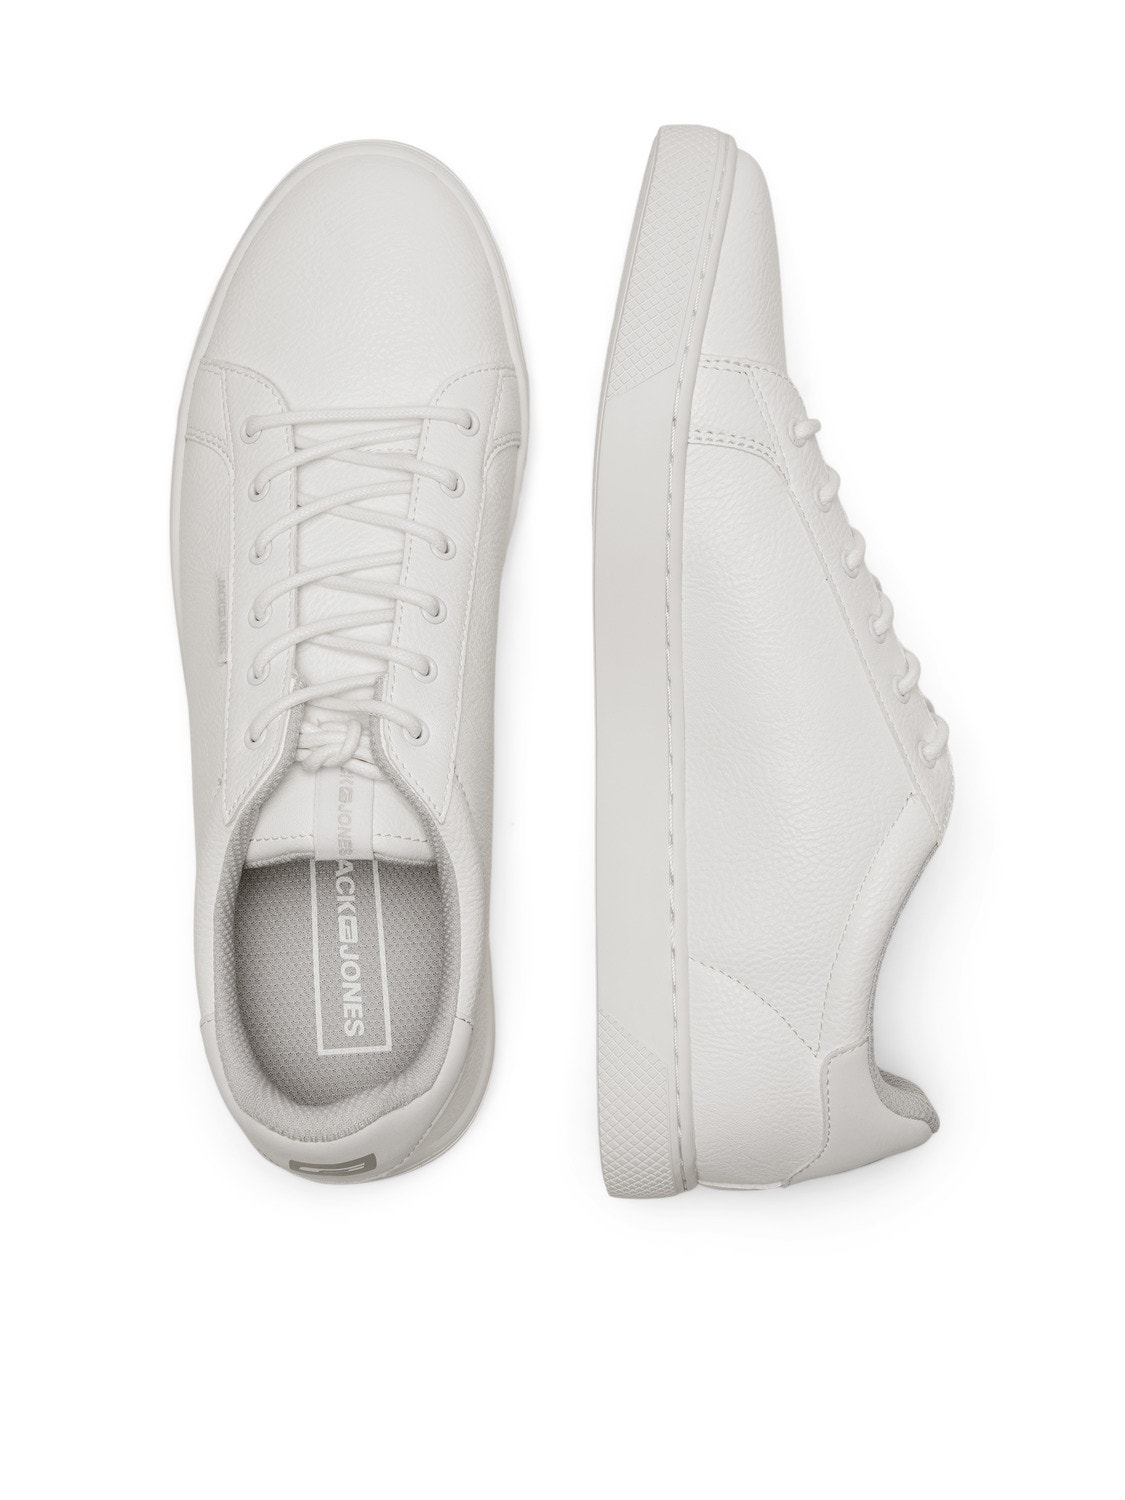 Jack & Jones Polyester Sneaker -Bright White - 12150725